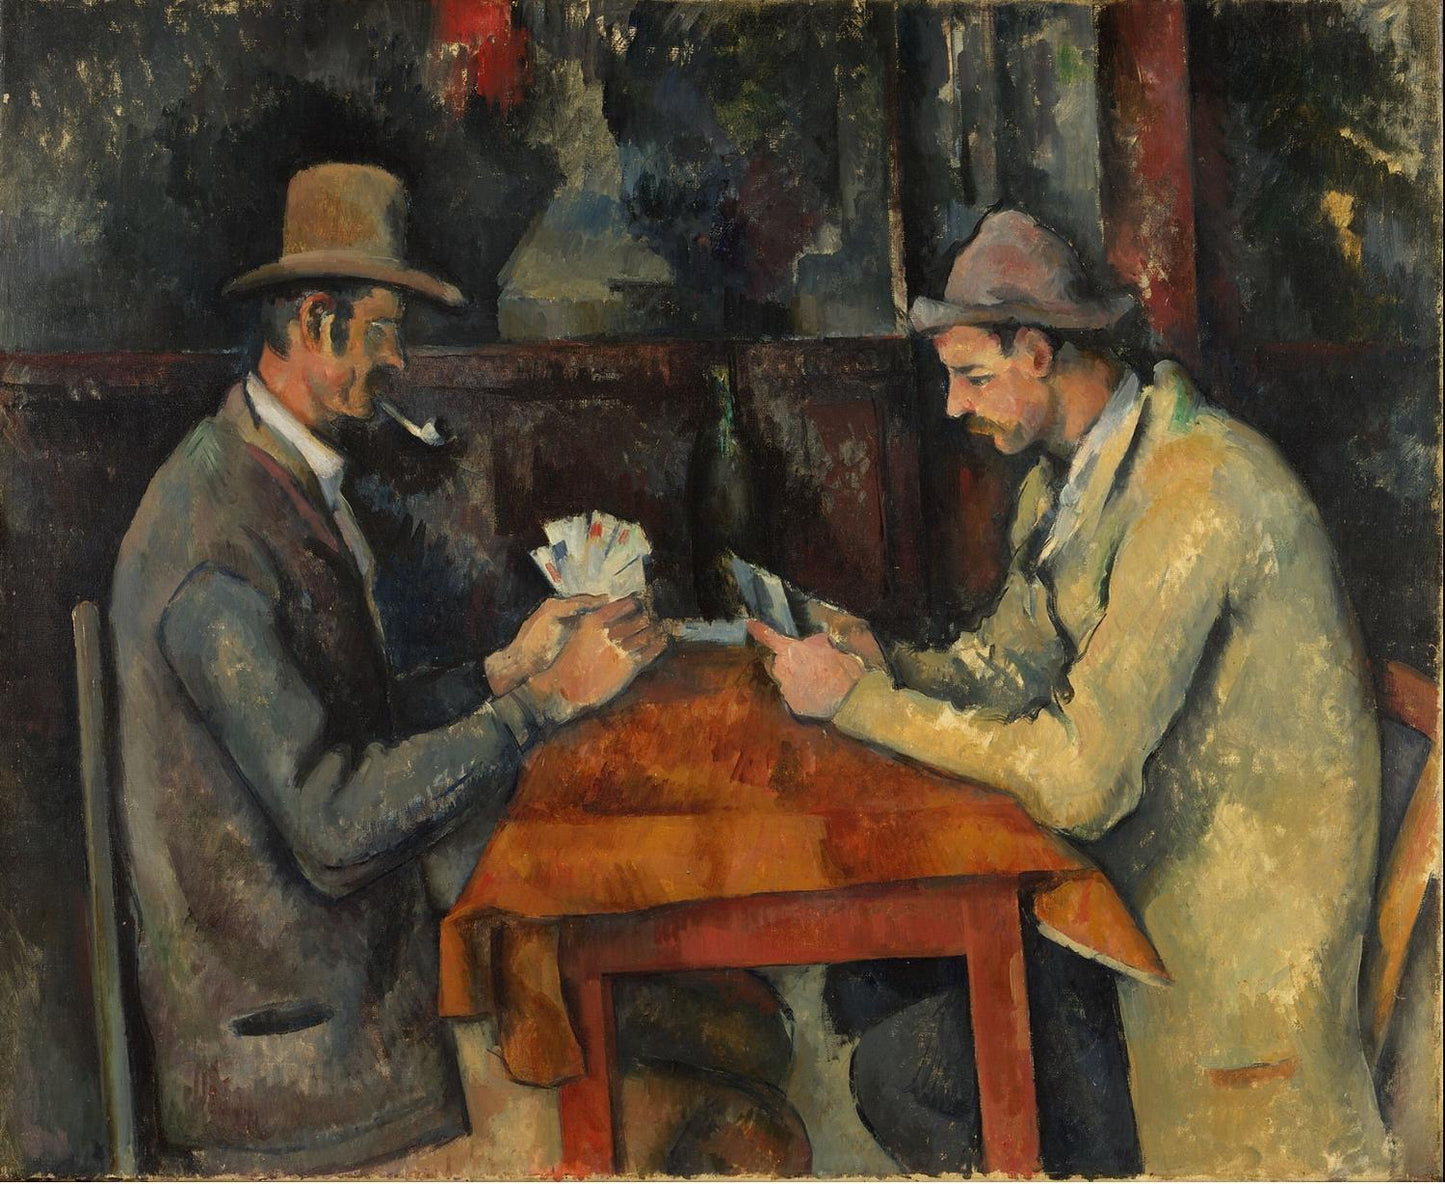 Les joueurs de cartes (The Card Players), Paul Cézanne